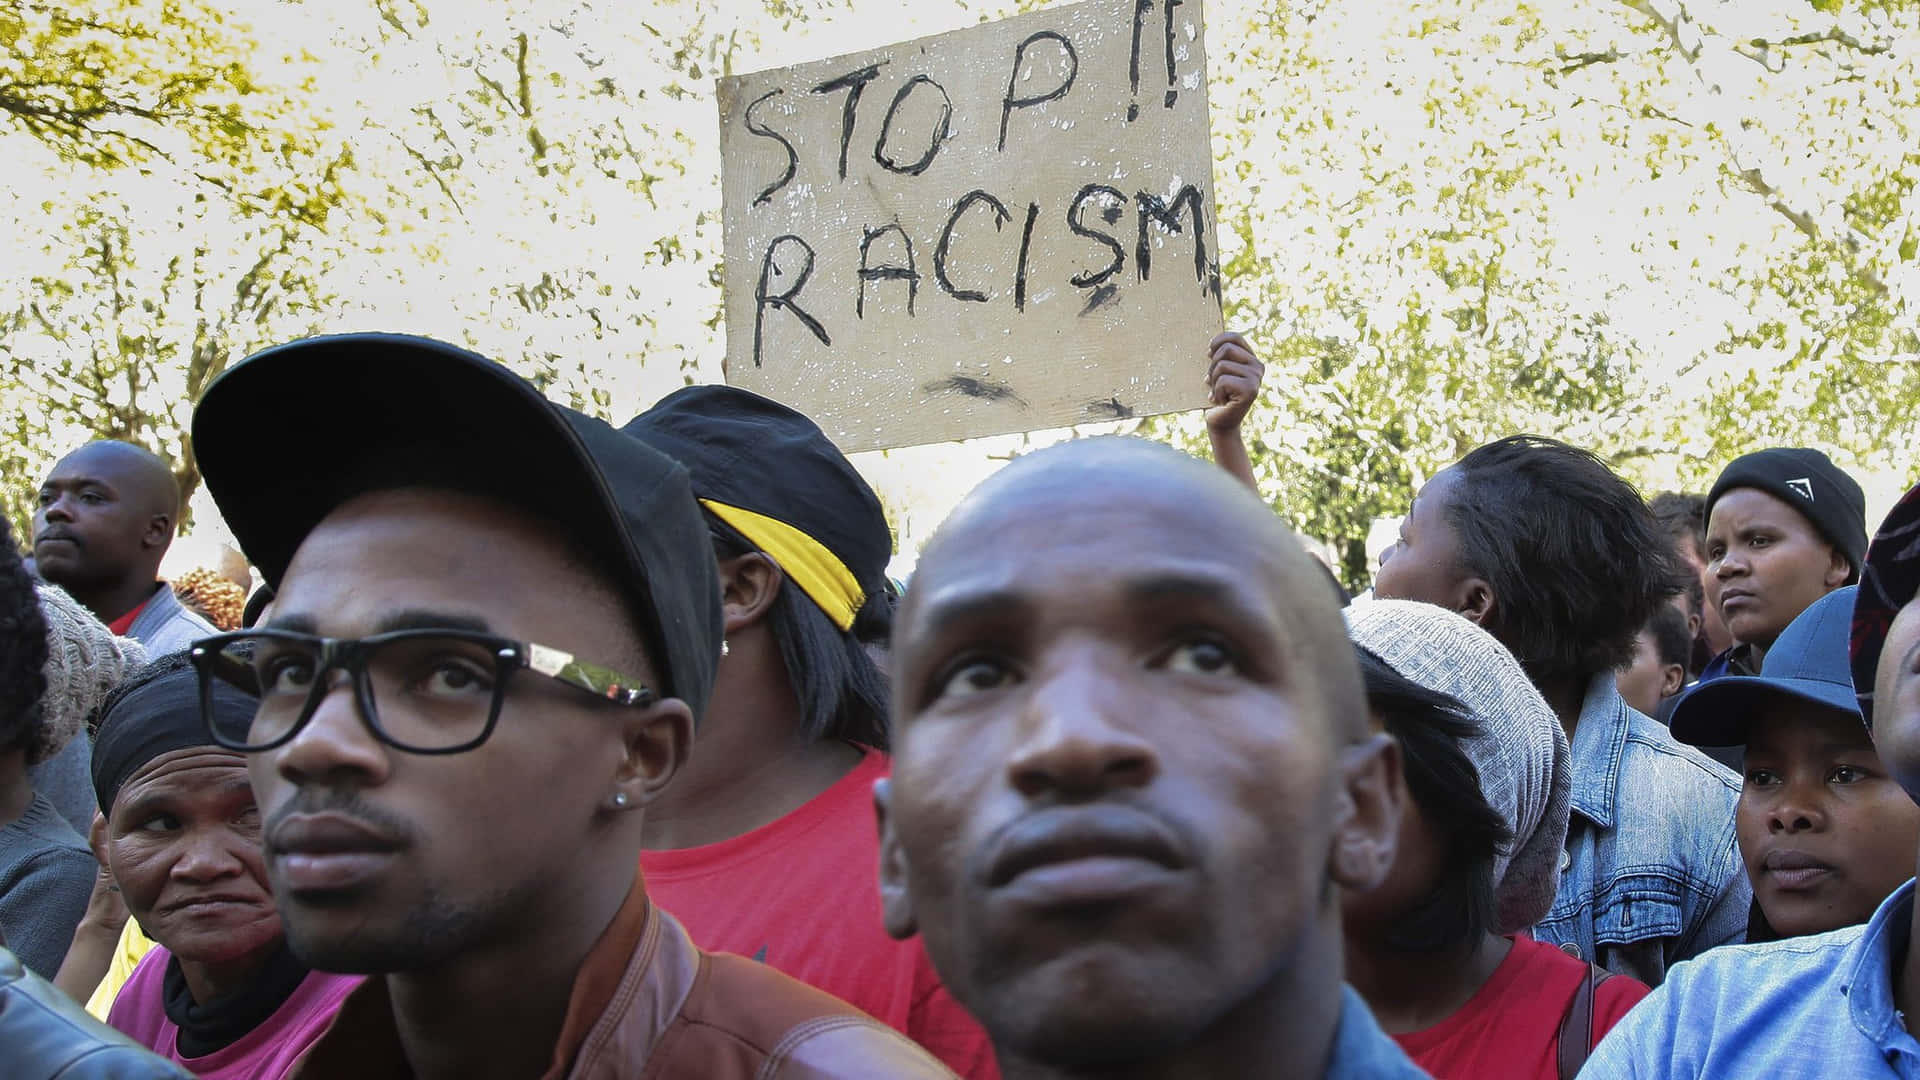 Racisme protest i Sydafrika Wallpaper